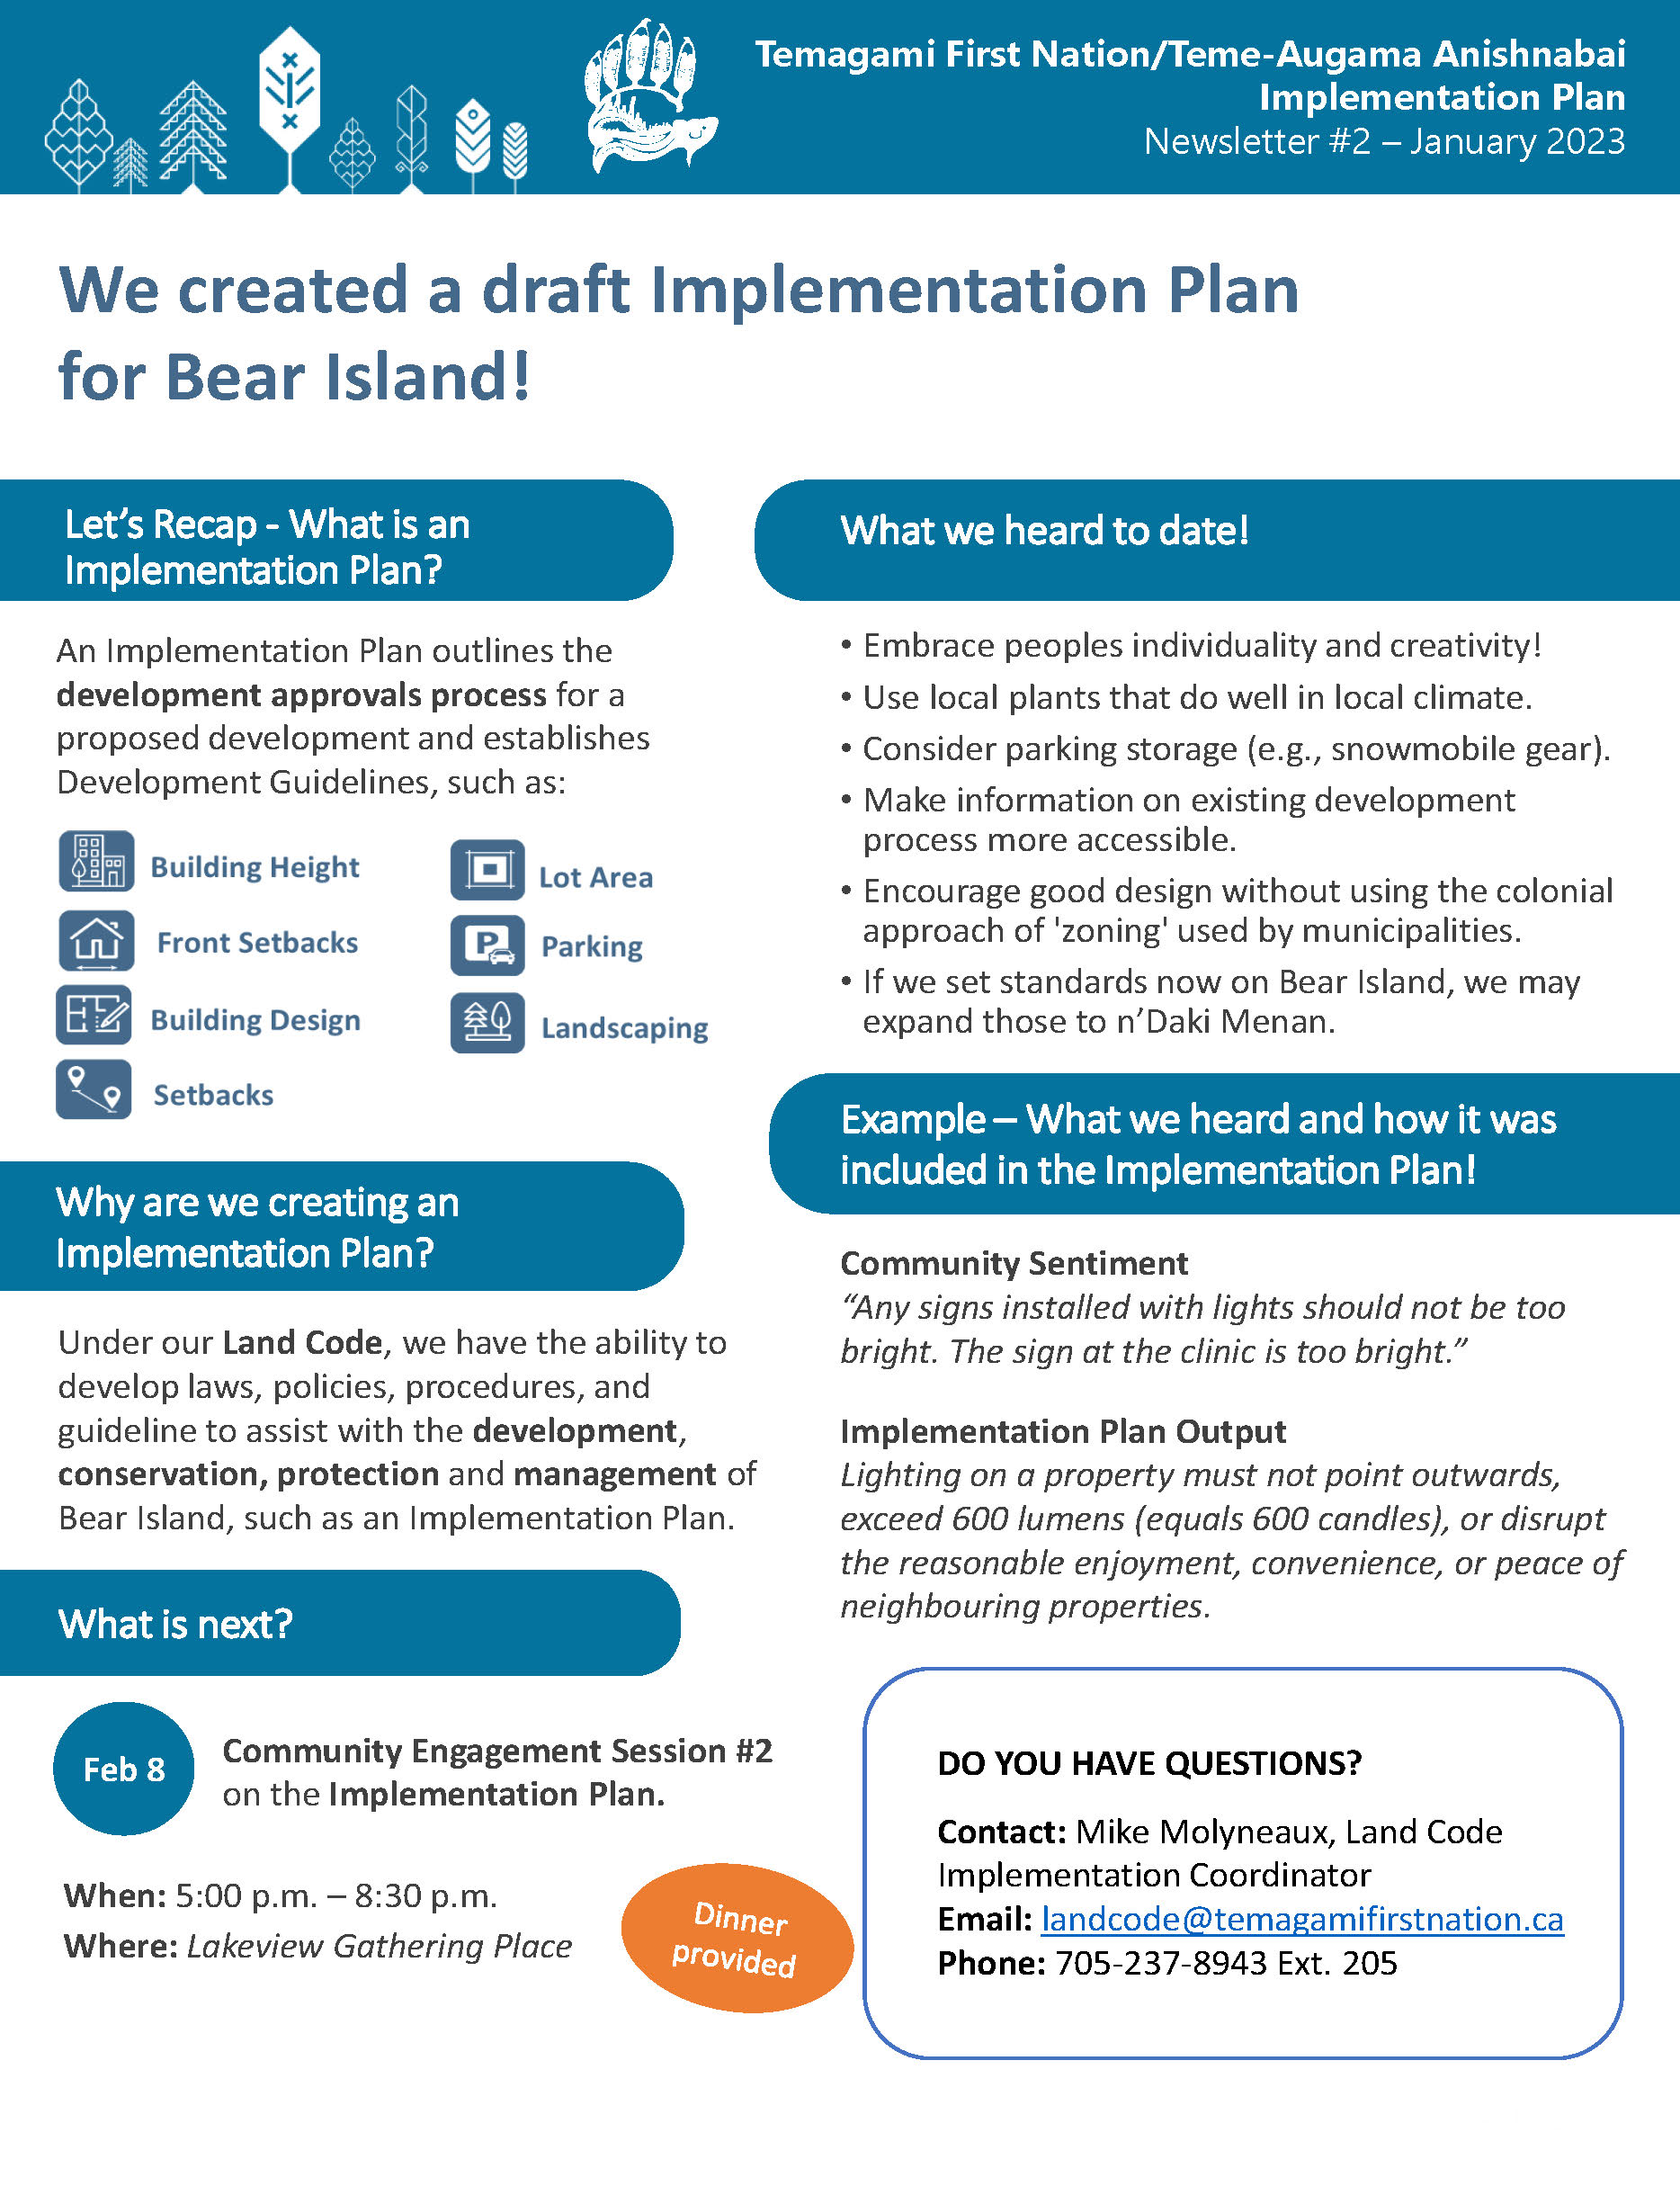 Implementation (Zoning) Plan (IMP)